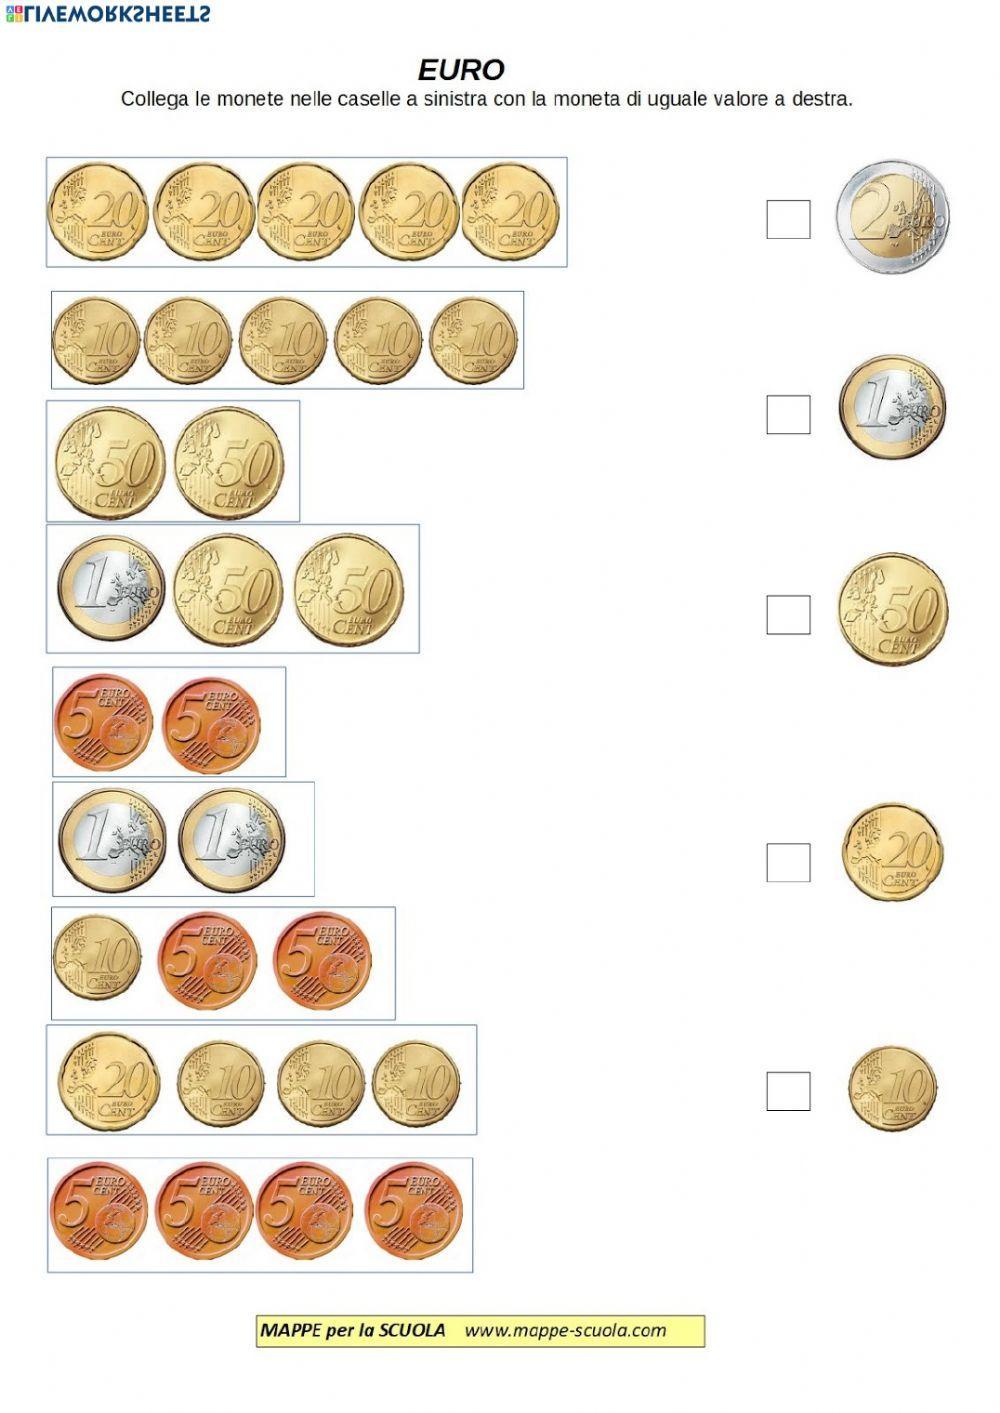 Moneta: Euro